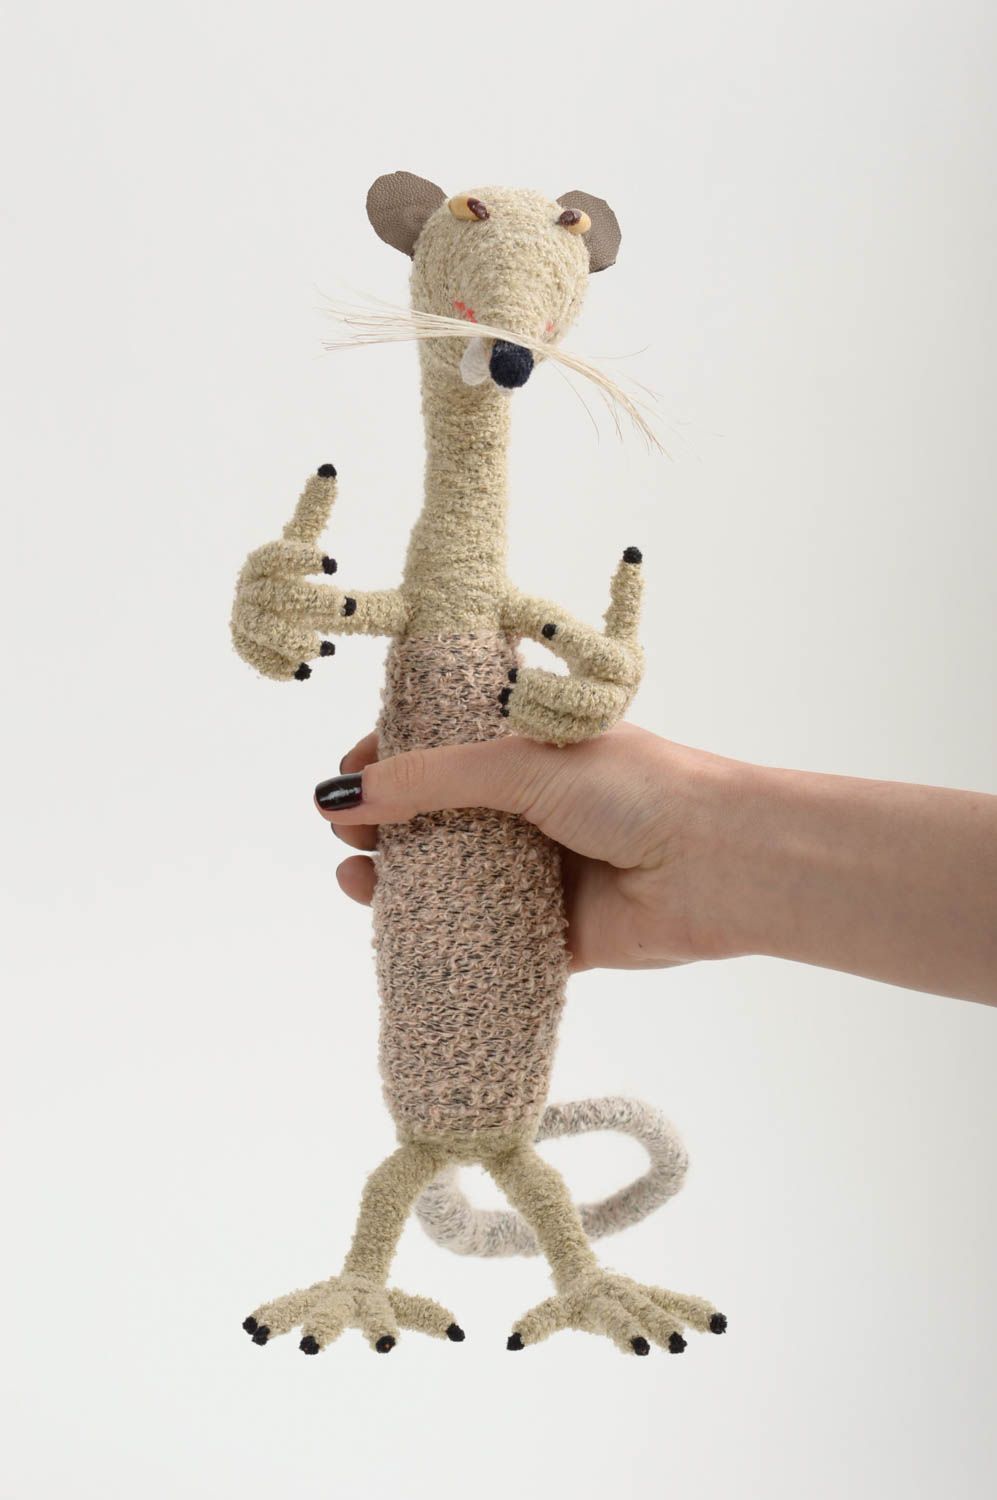 Мягкая игрушка крыса ручной работы игрушка для малышей интересный подарок фото 5